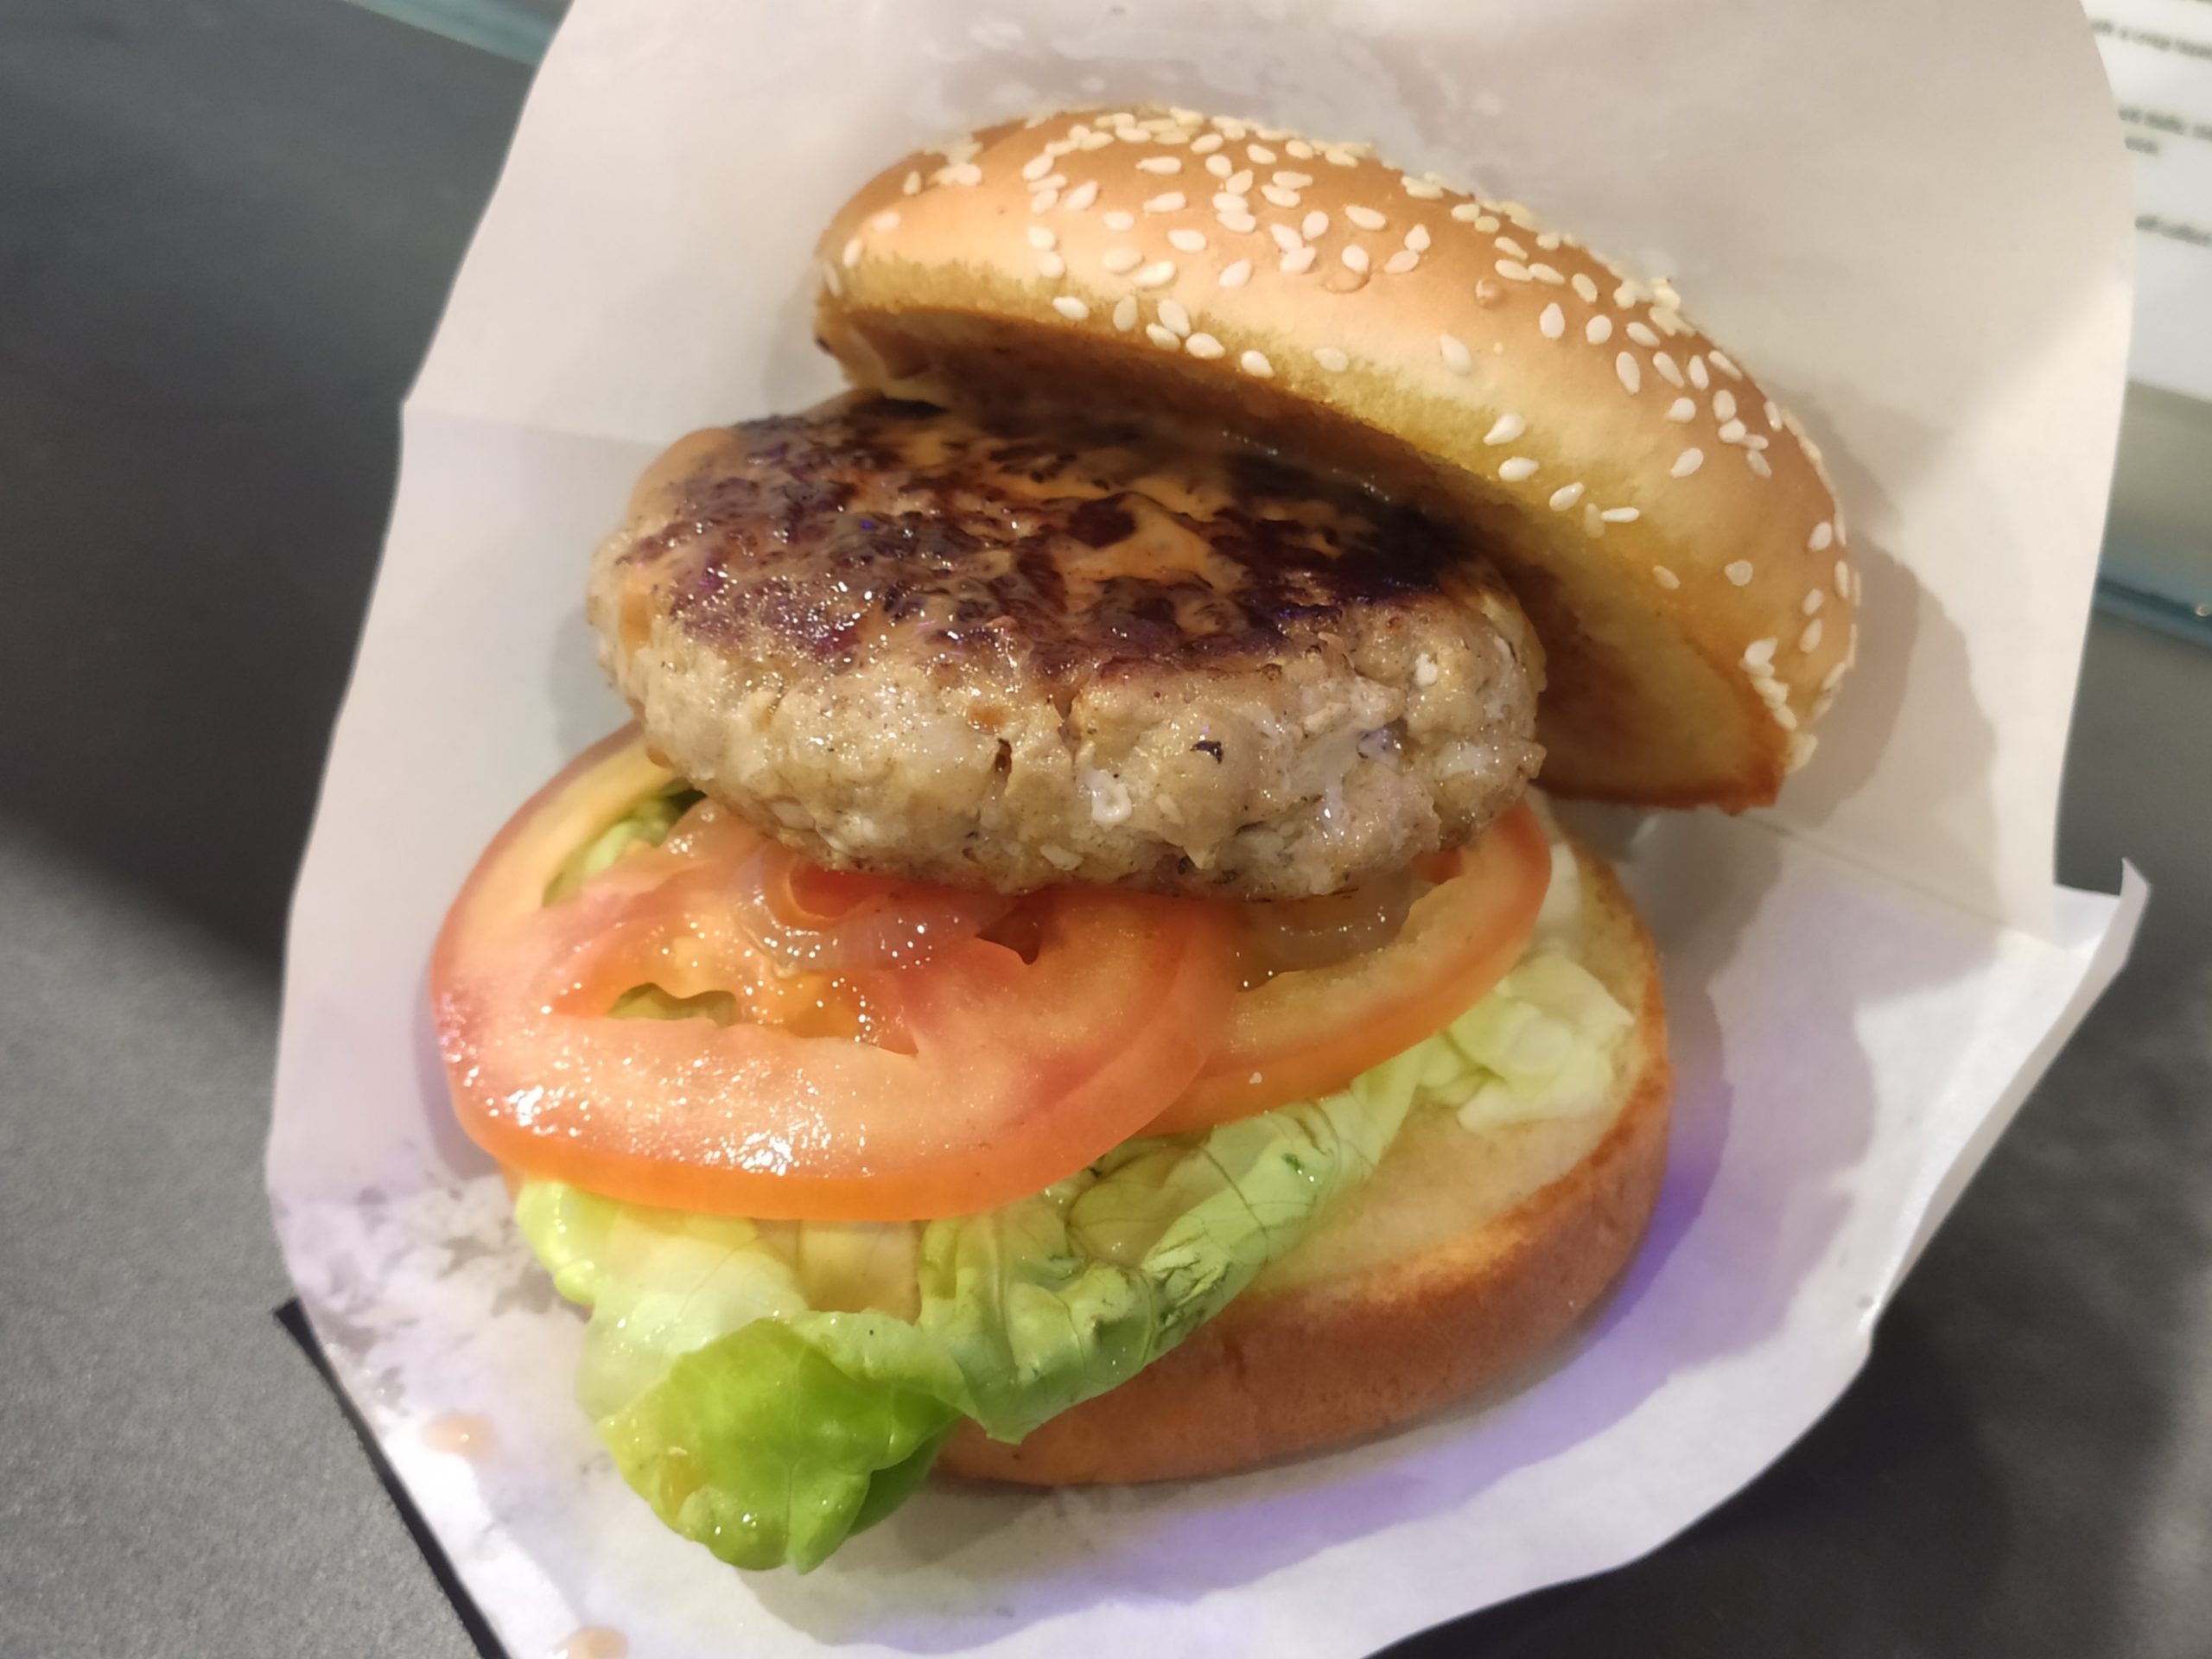 Zipp Burger & Pasta: Grilled Pork Burger